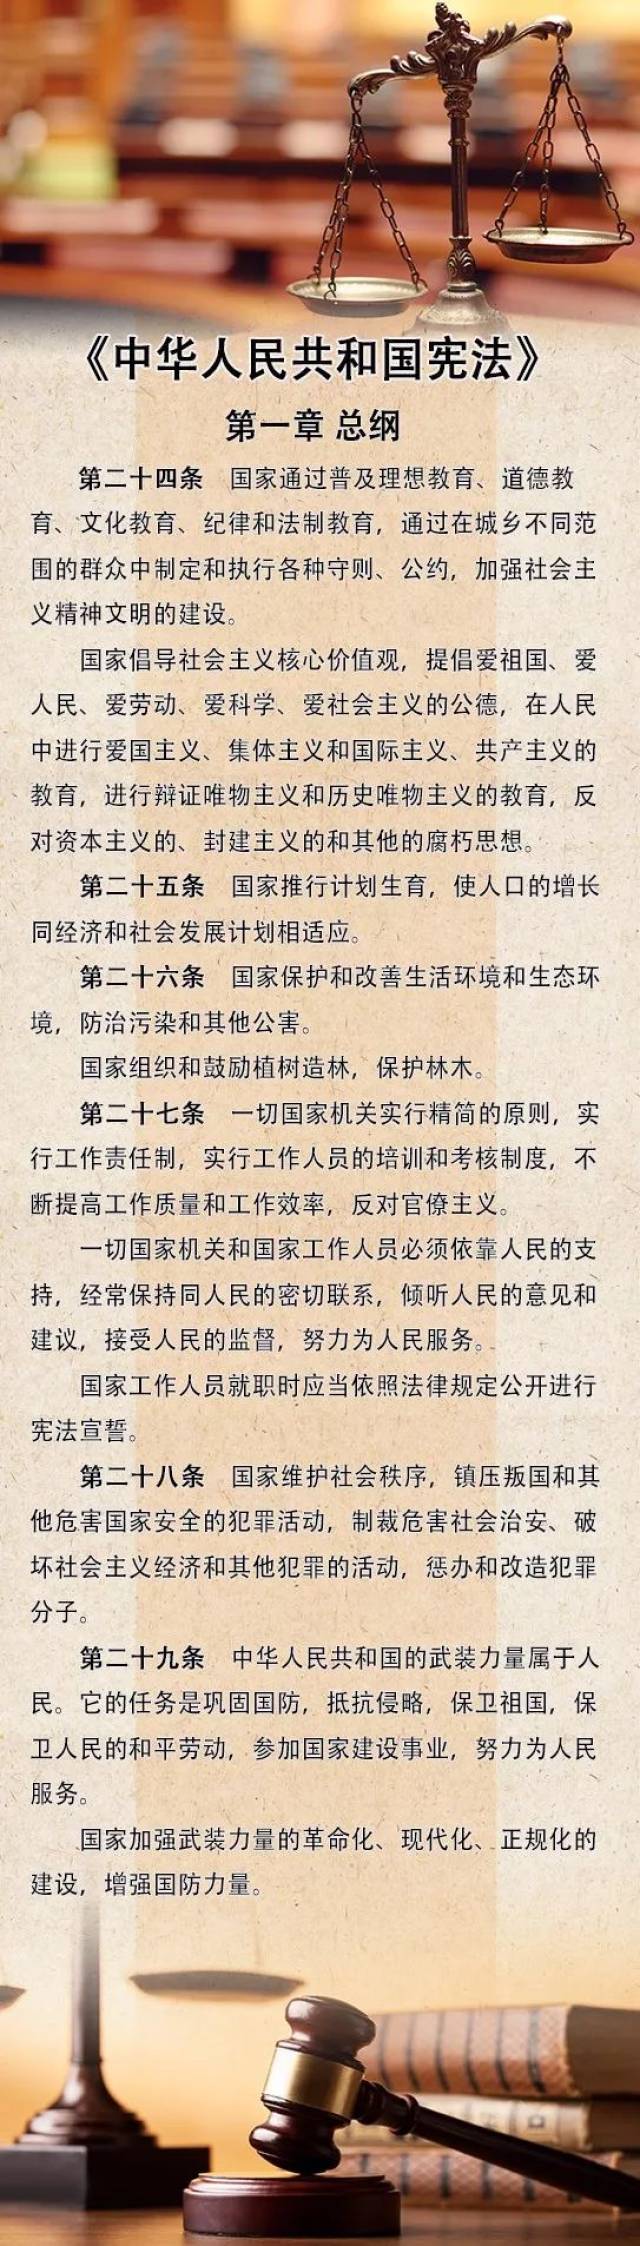 《中华人民共和国宪法》微讲堂(六)